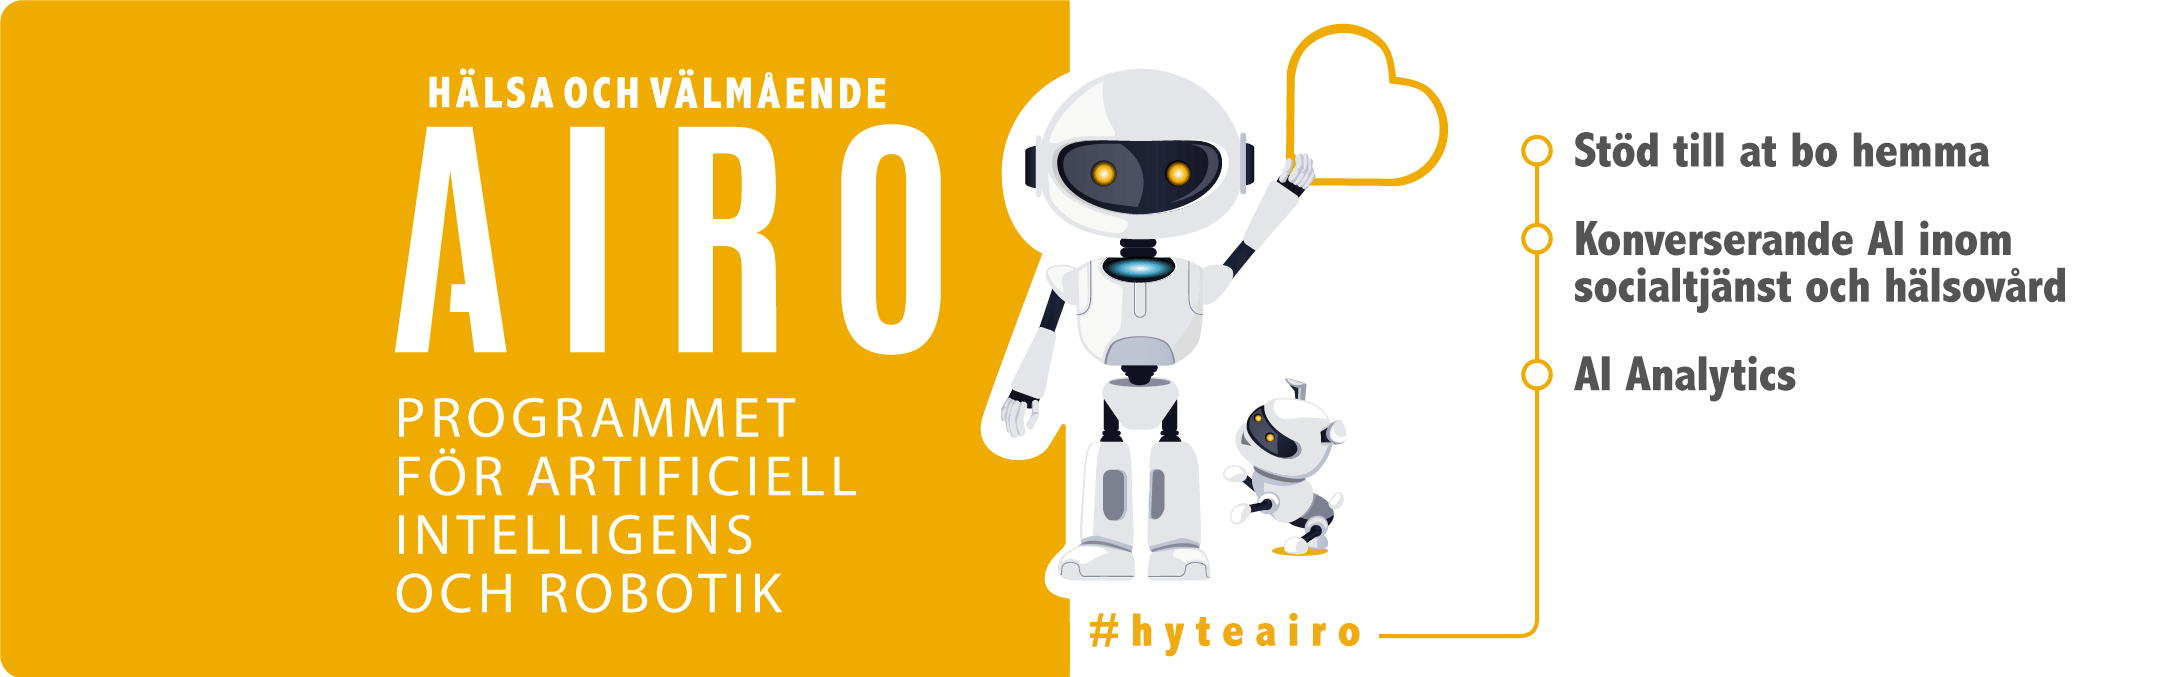 Hälsa och värmående AiRo programmet för artificiell intelligens och robotik: Stöd till at bo hema, konverserande AI inom socialtjänst och hälsovård, AI analytics.